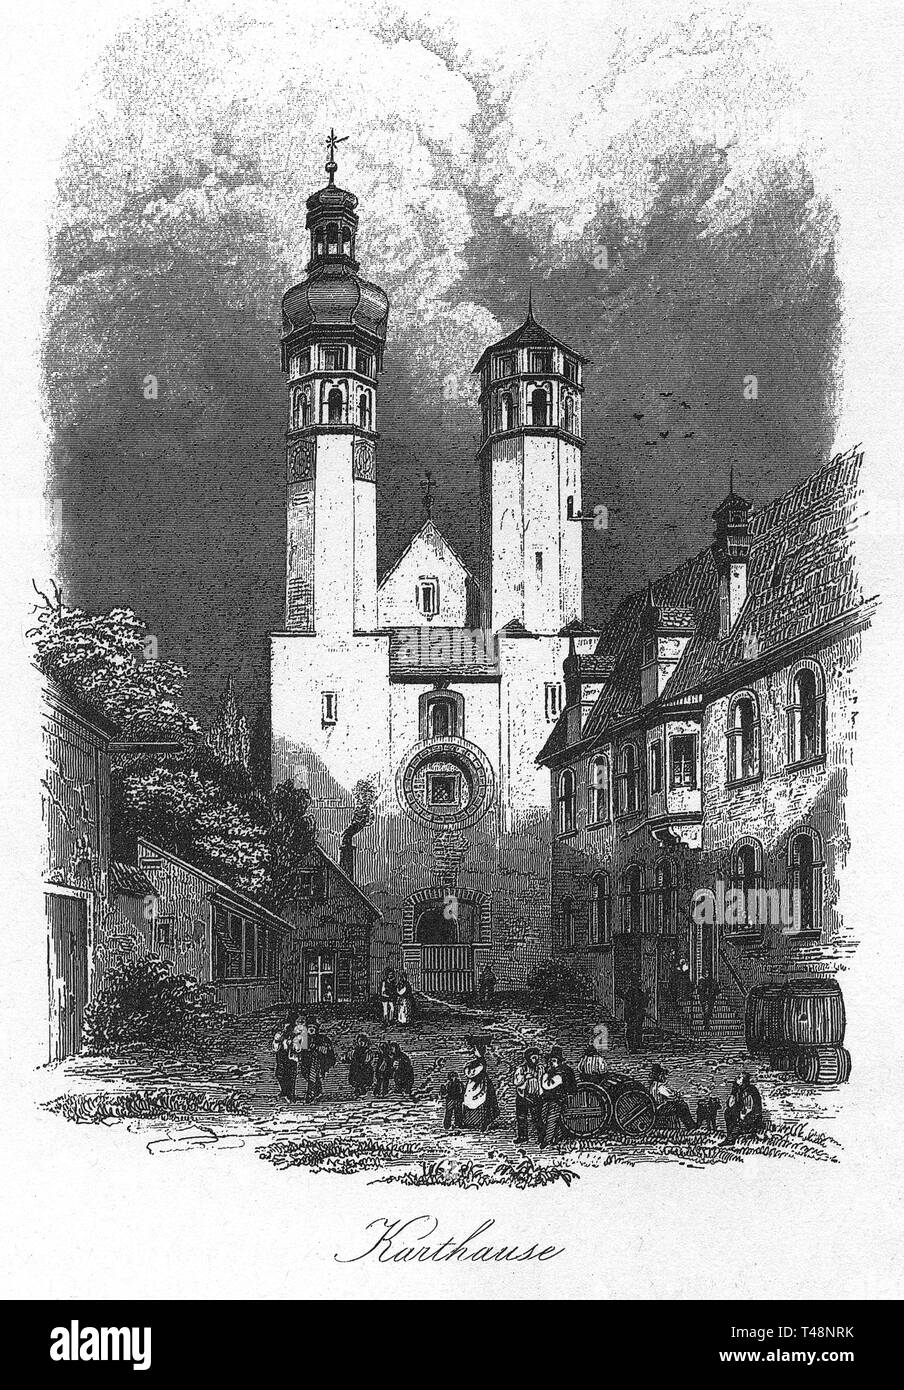 Karthause, Regensburg, Zeichnung von Ed. Gernhardt, Stahlstich von J. Poppel, 1840-1854, Königreich Bayern, Deutschland Stockfoto